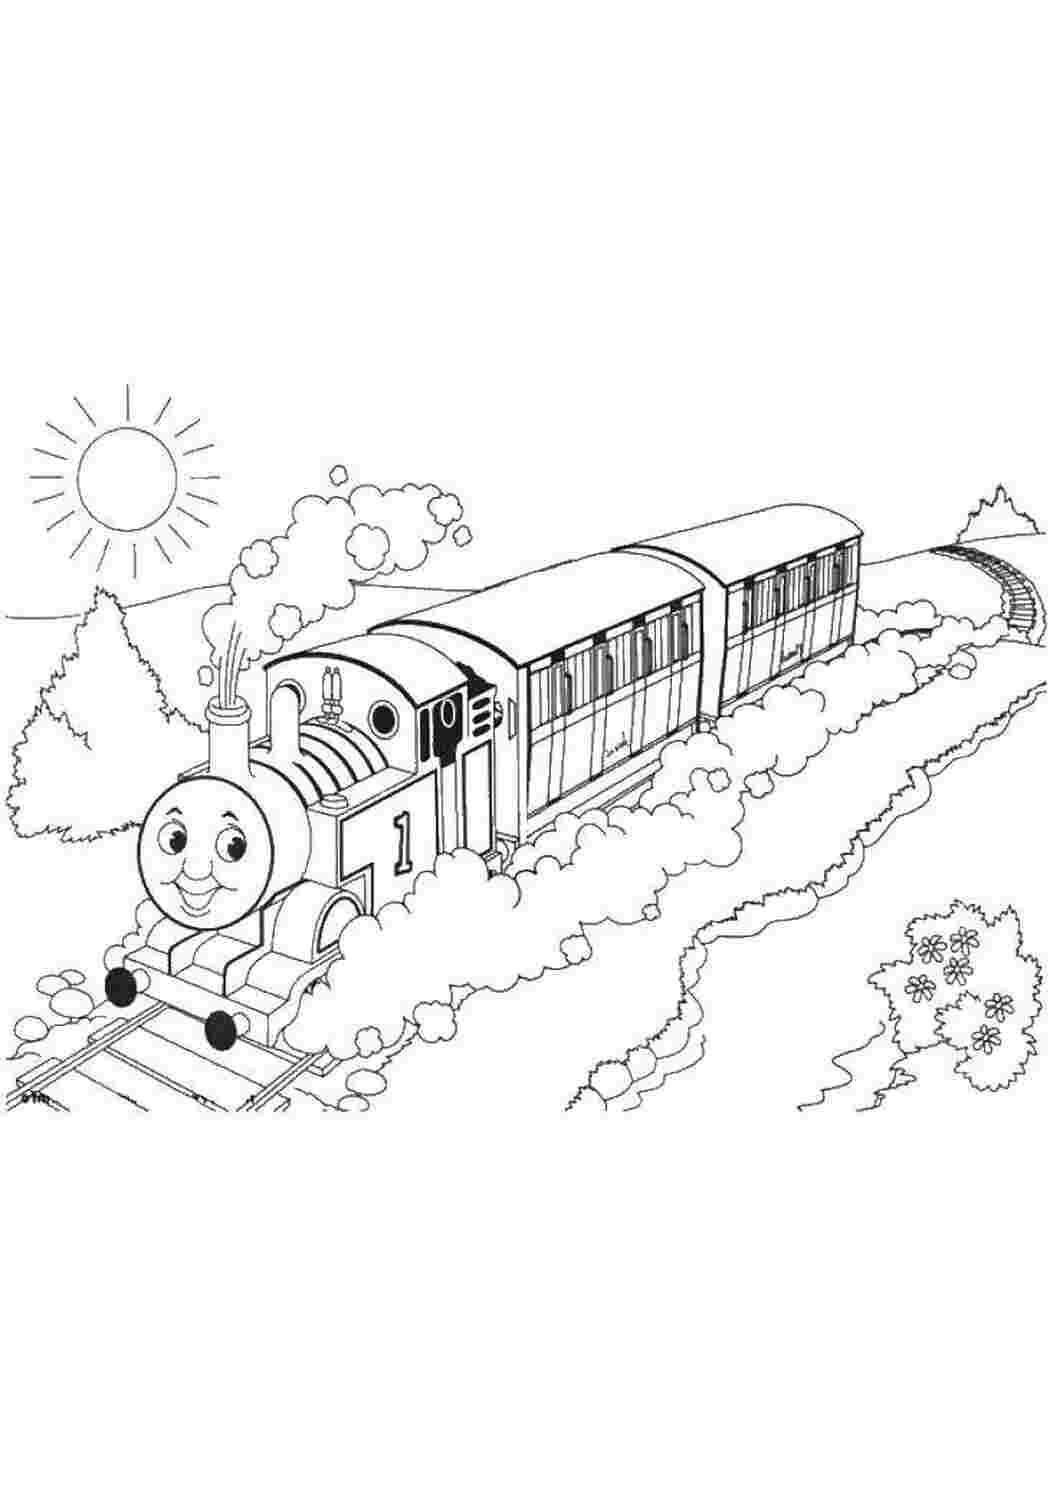 Поезд-раскраска для детей мультфильм паровоз на железной дороге веселый локомотив иллюстрация